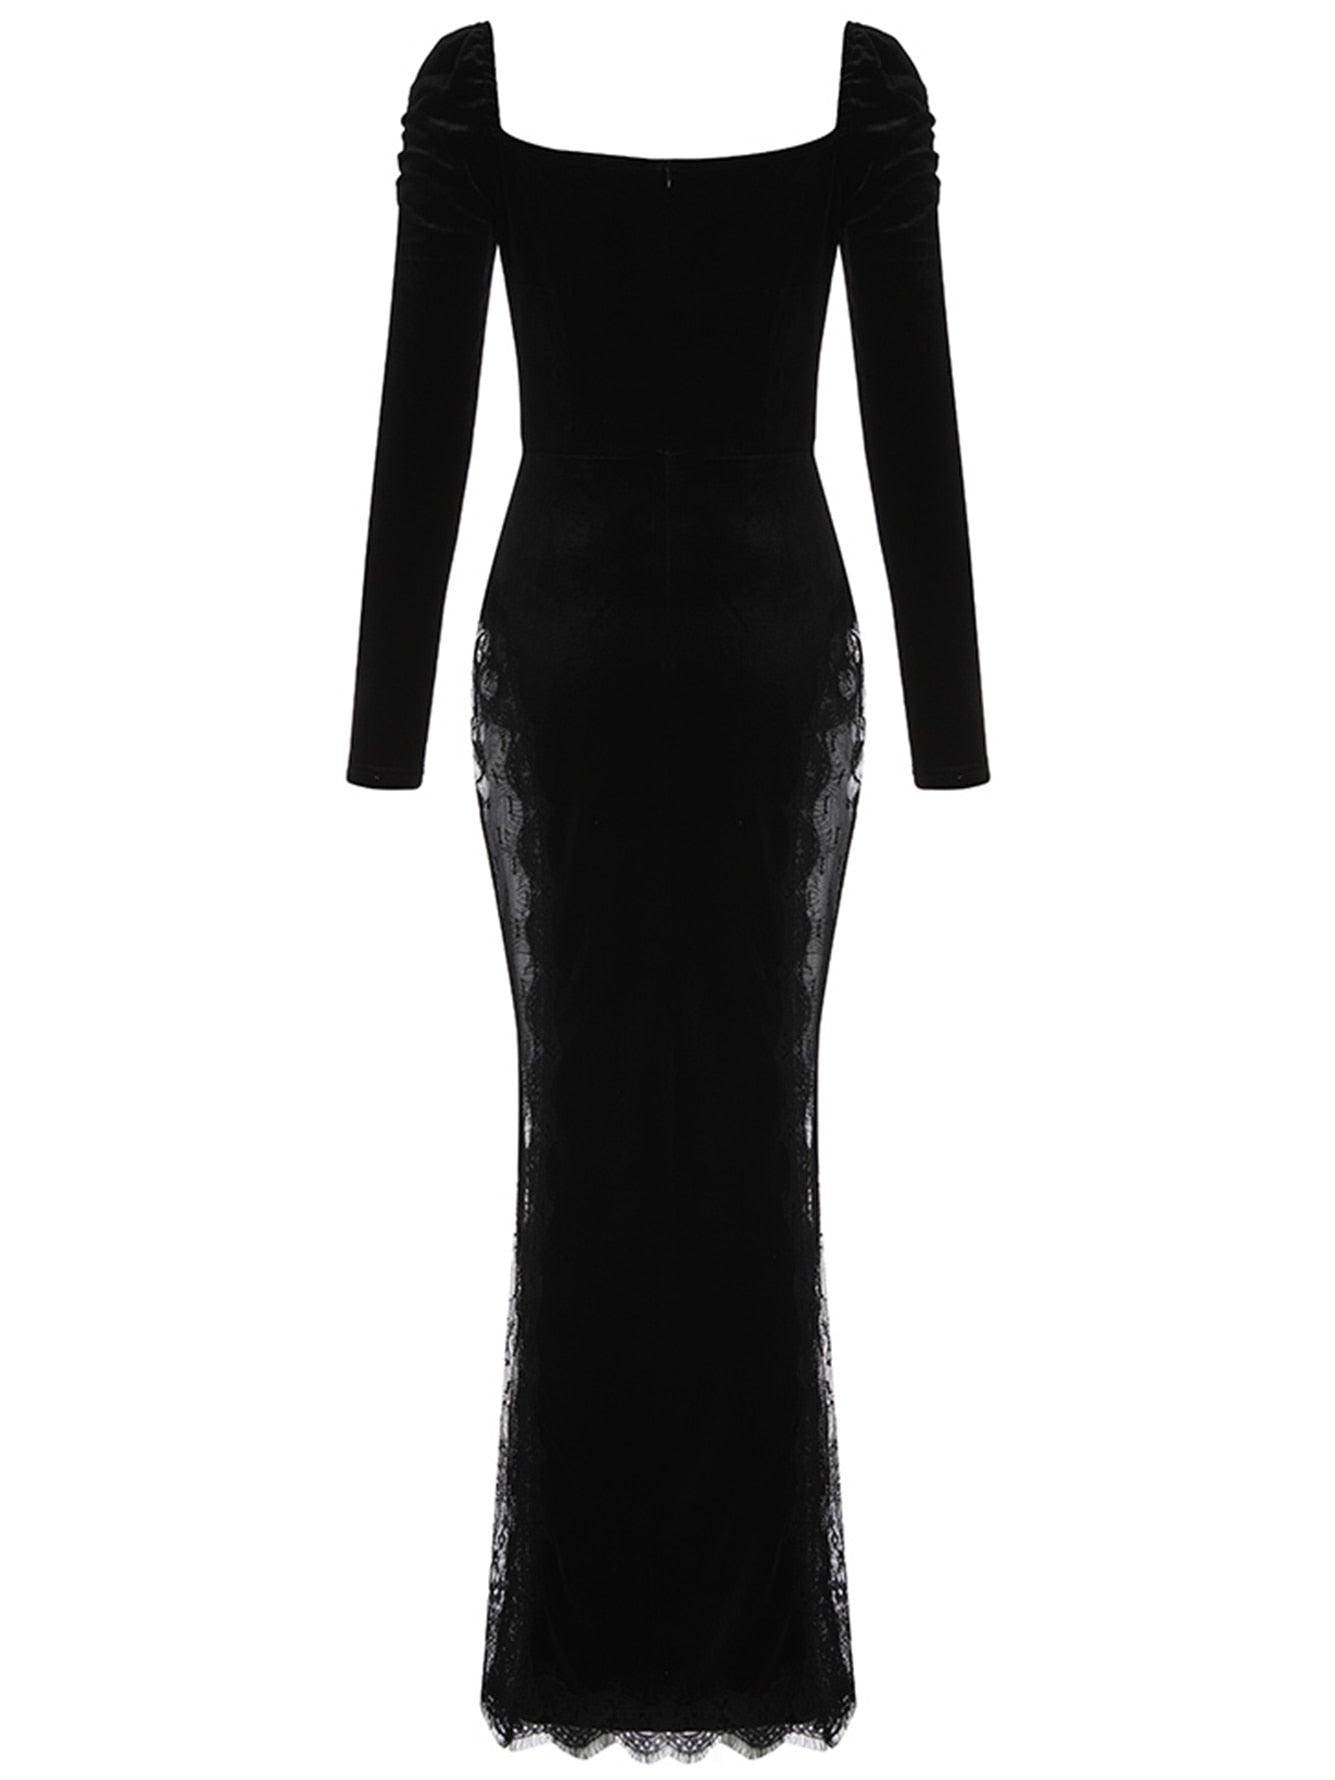 Fashionsarah.com Evening Maxi Velvet Dress